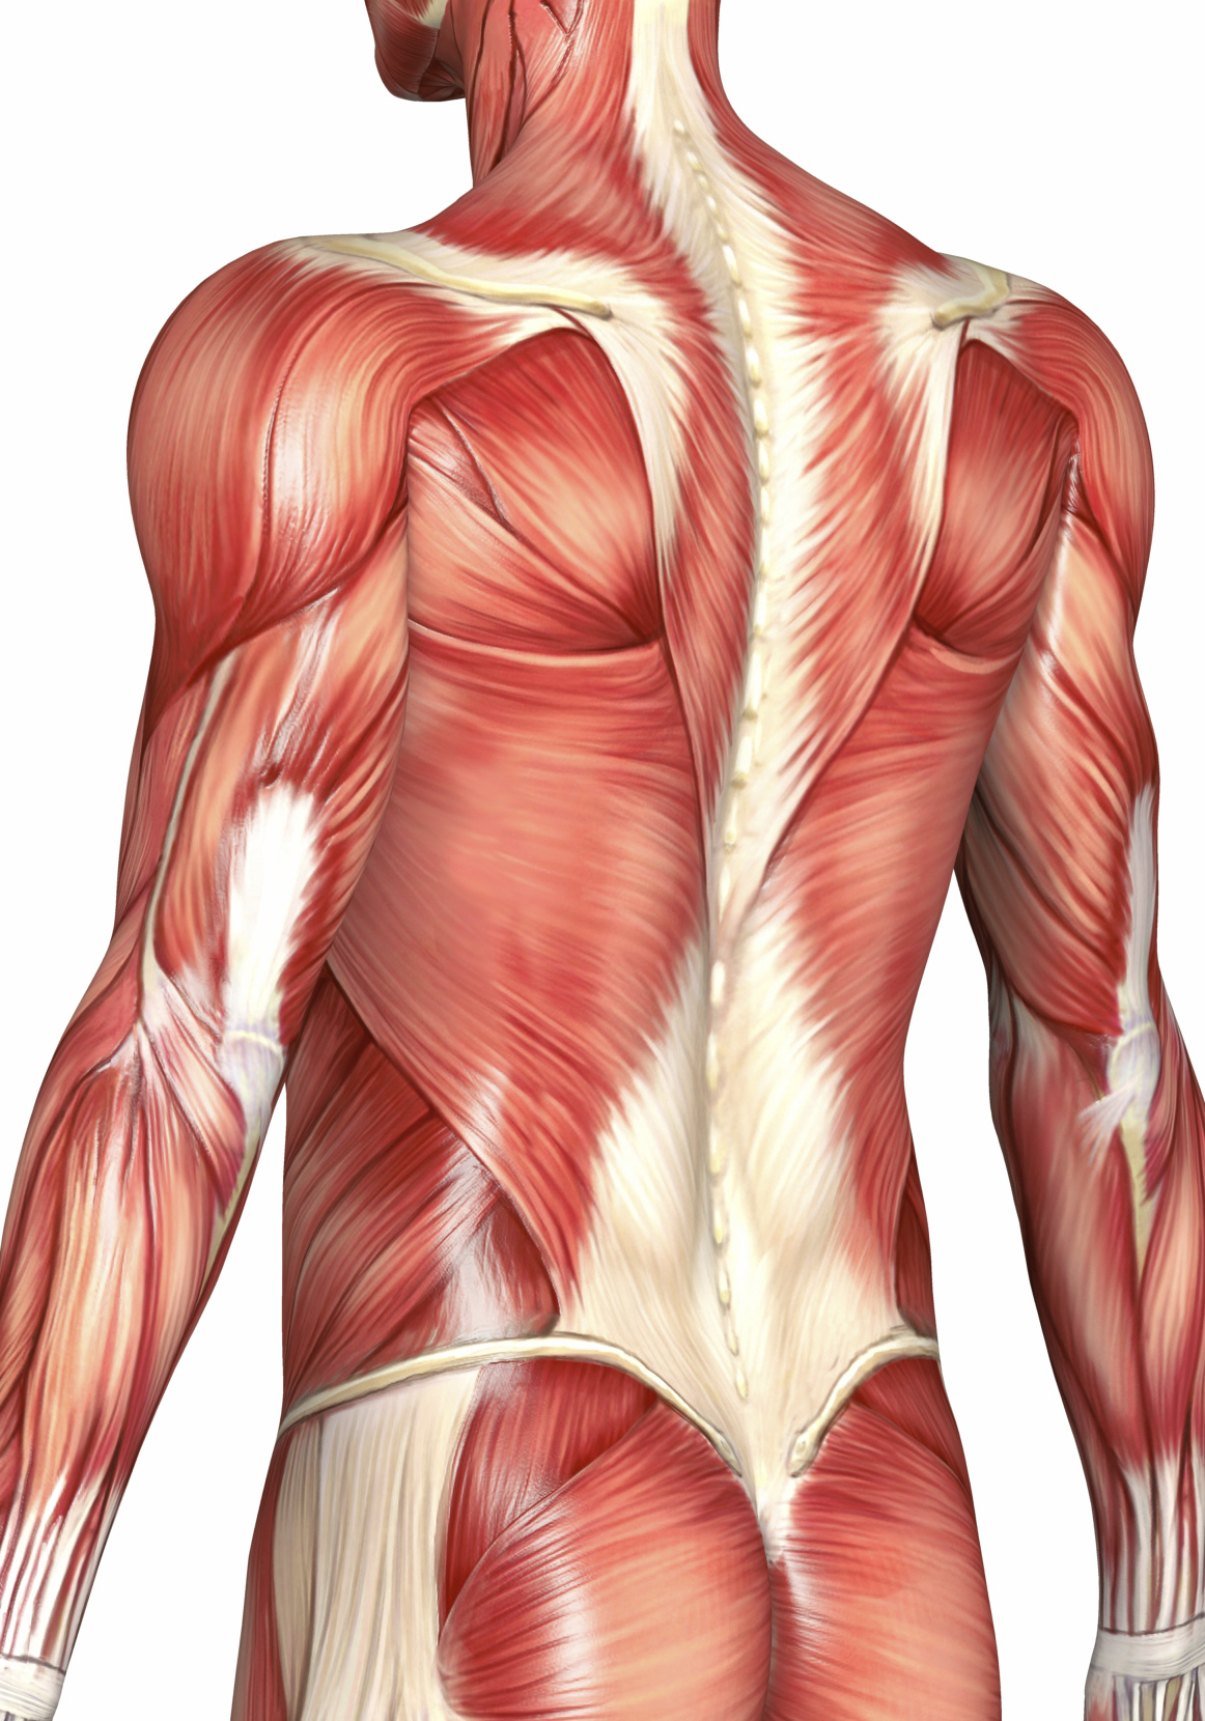 поясничная мышца спины анатомия картинки